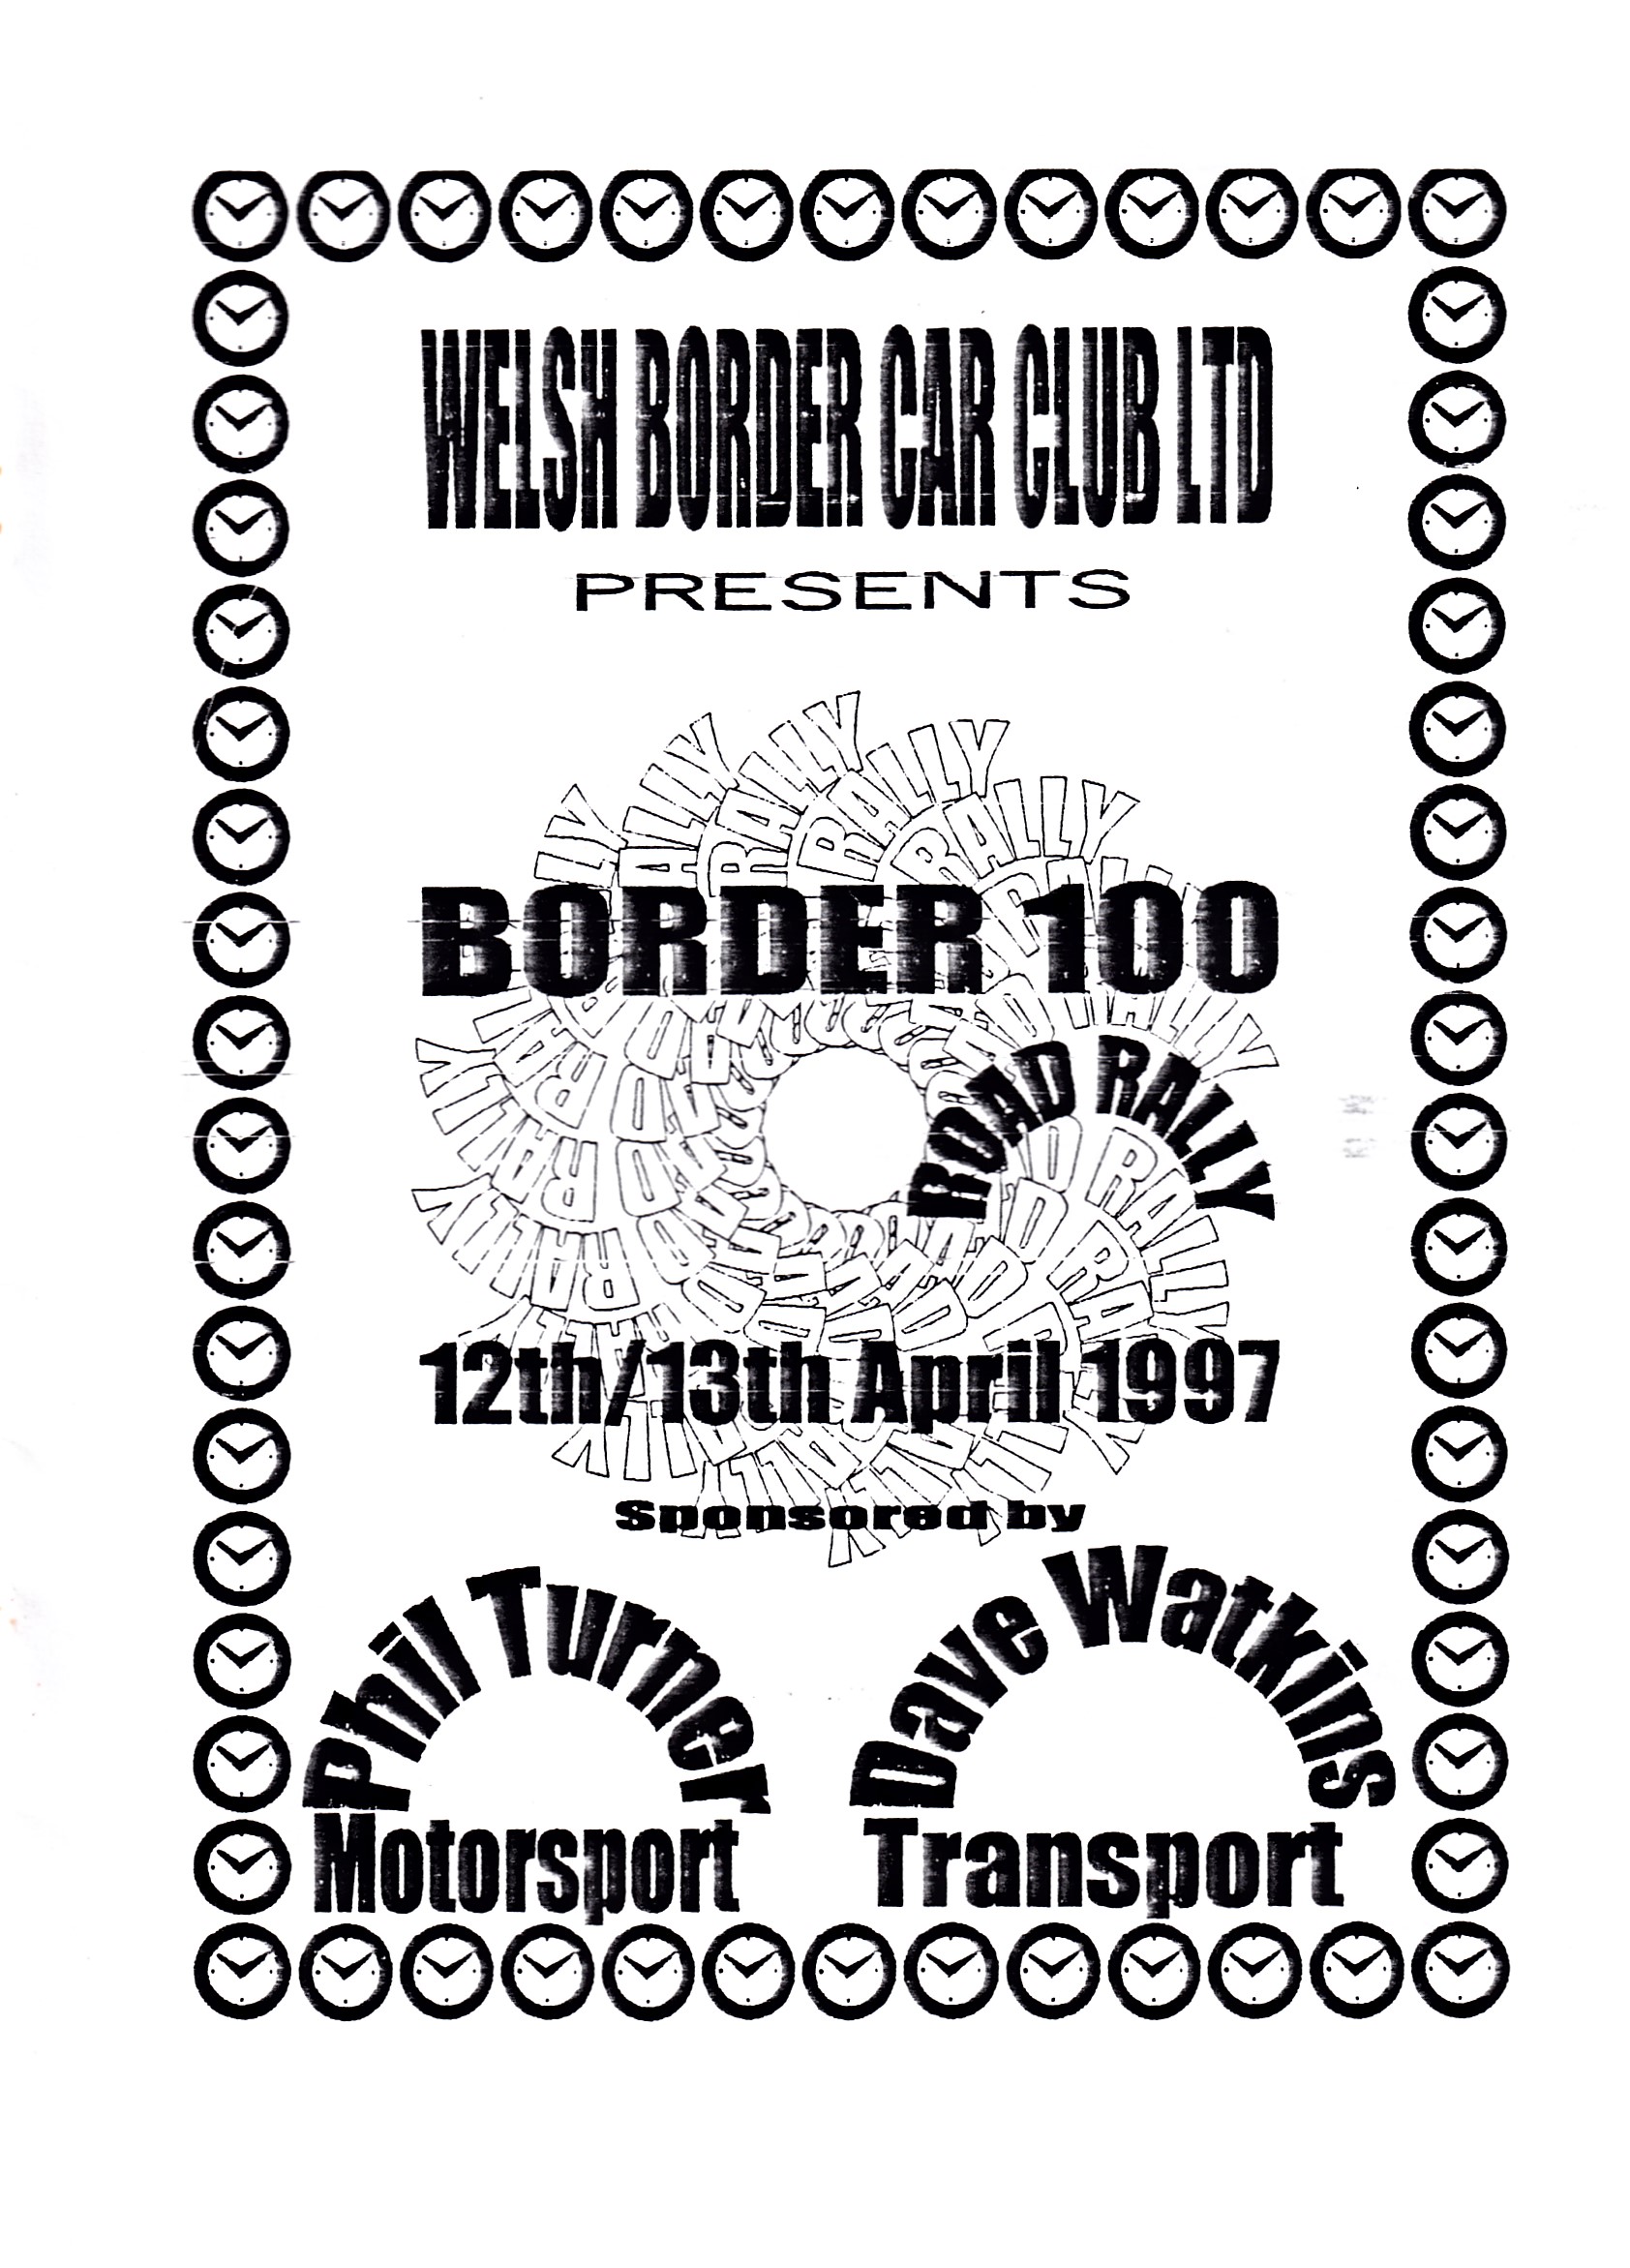 Border 100 Rally 1997